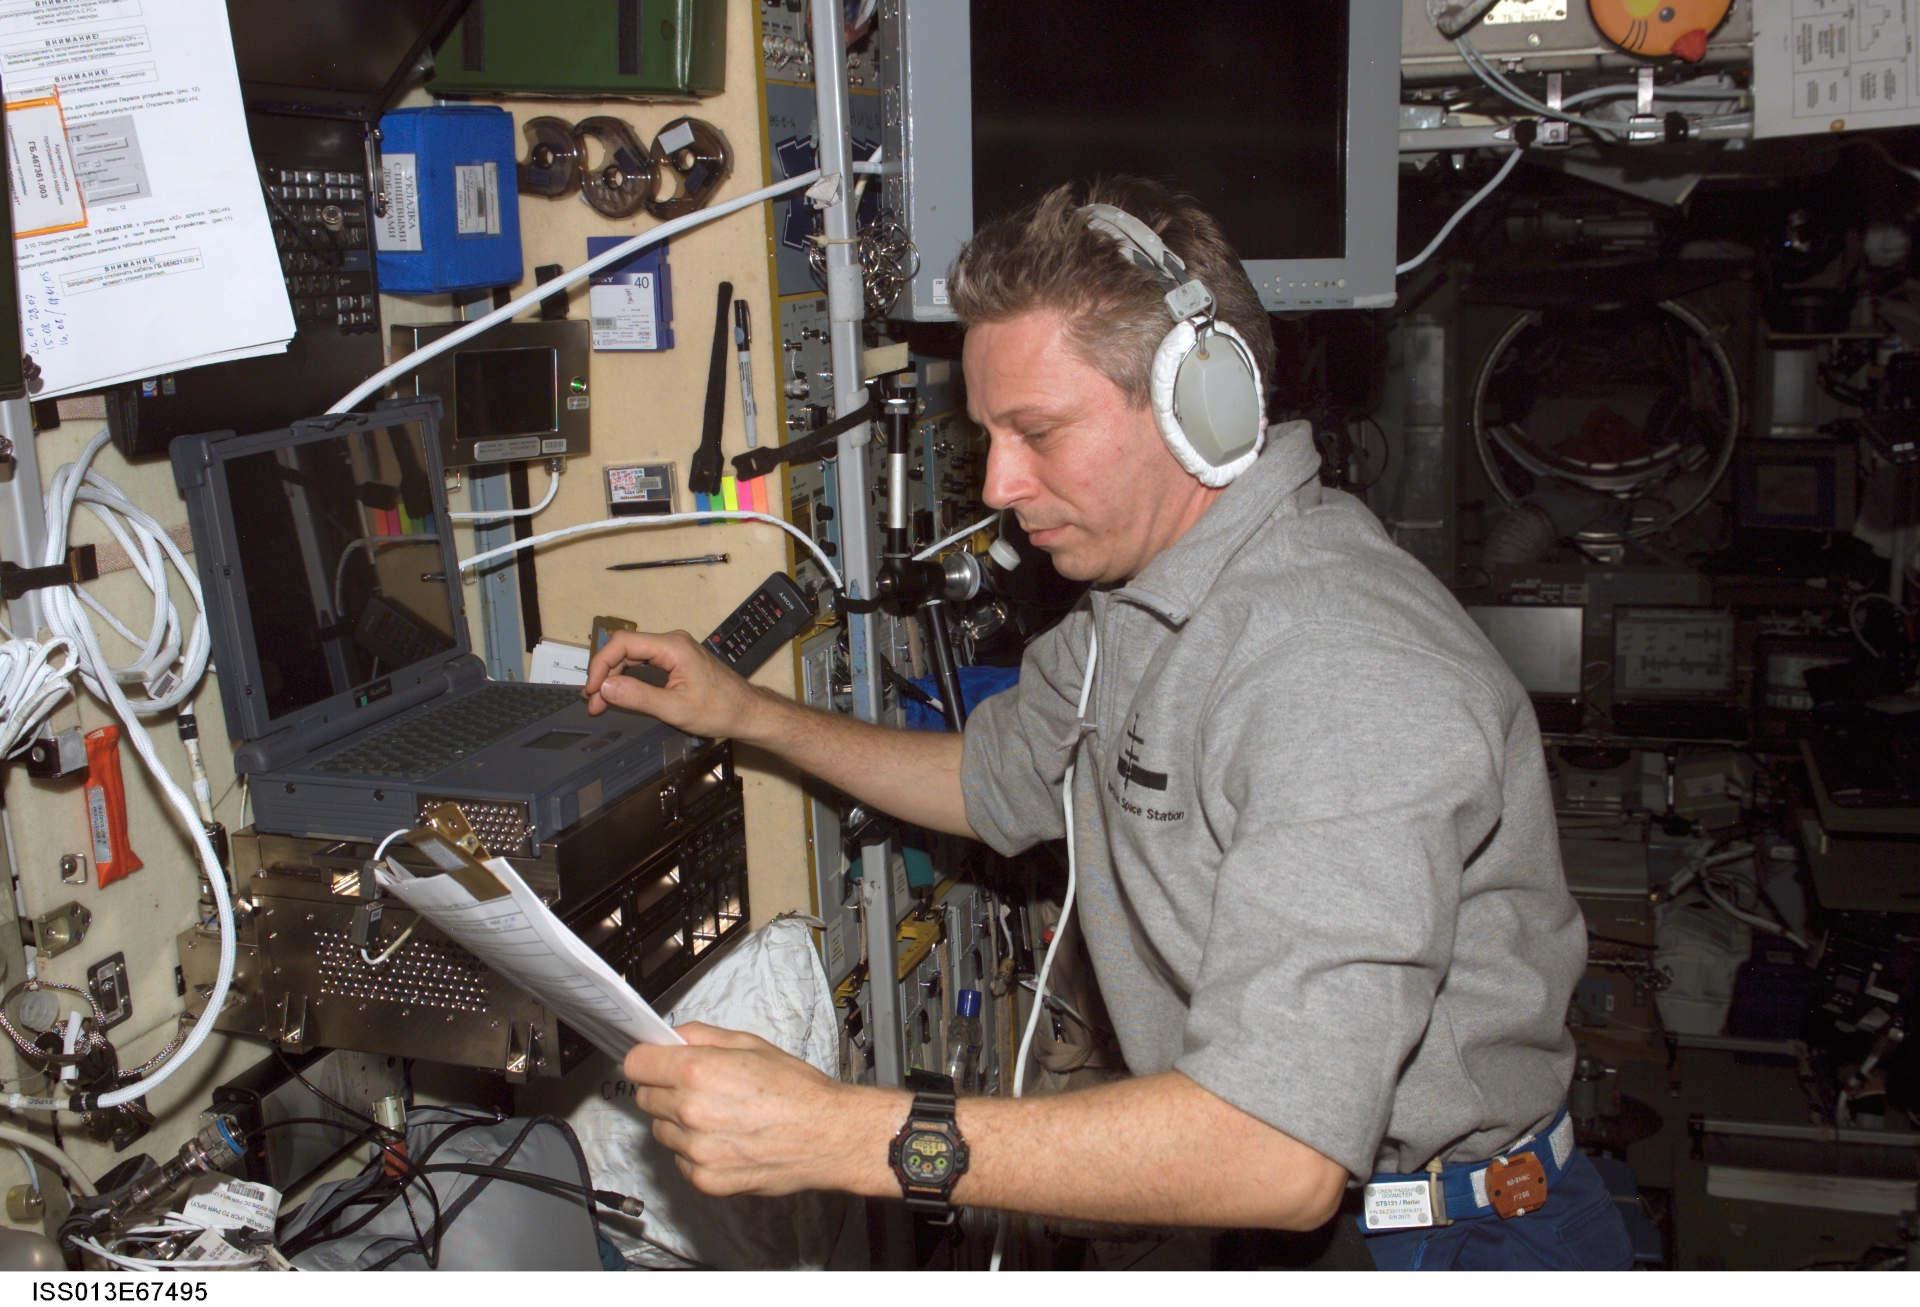 Astronaut Thomas Reiter während seiner Astrolab Mission auf der ISS bei der Bedienung des PK-3 Plus Kontrollcomputers im Juli 2006